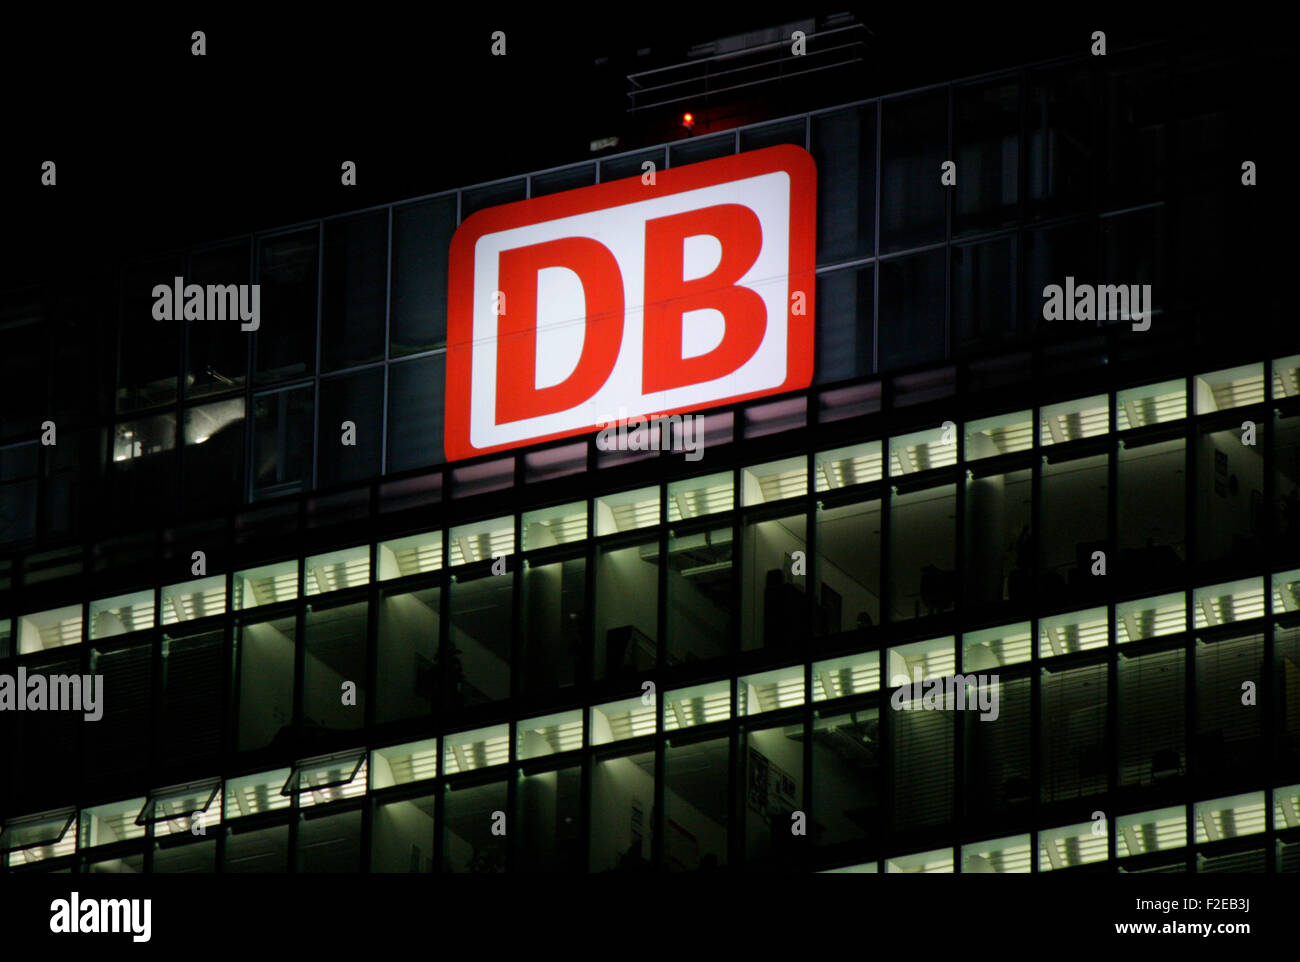 NOVEMBER 2013 - BERLIN: Marken: das Logo der deutschen Logistikunternehmens "DB - Deutsche Bahn", Berlin. Stockfoto